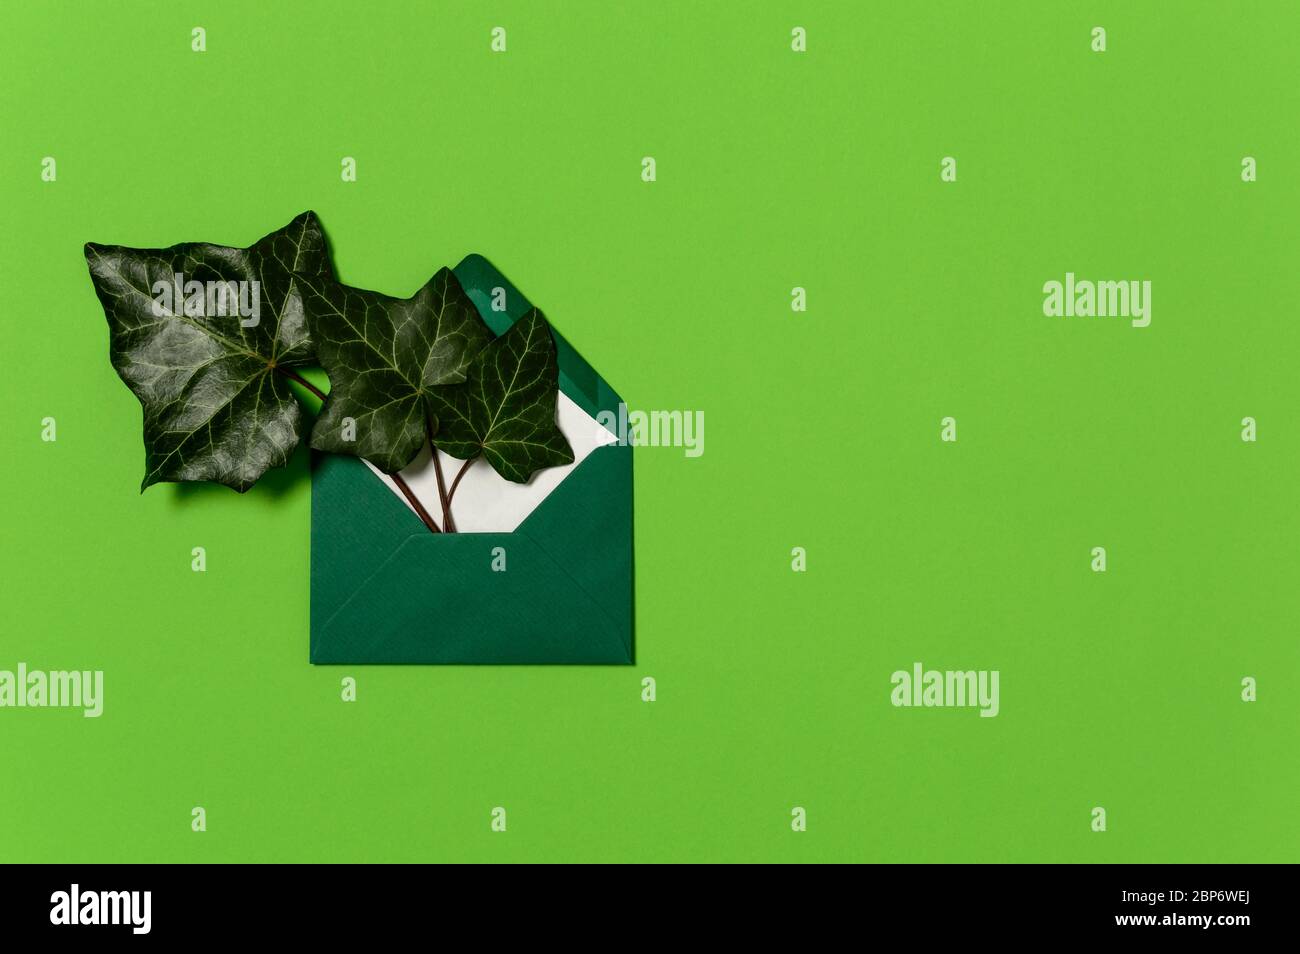 Immergrüne Efeu- oder hedera-Blätter in Umschlag auf lebhaftem grünen Hintergrund. Konzept der Ökologie, Natur- und Umweltschutz, Flat Lay mit Kopie Stockfoto